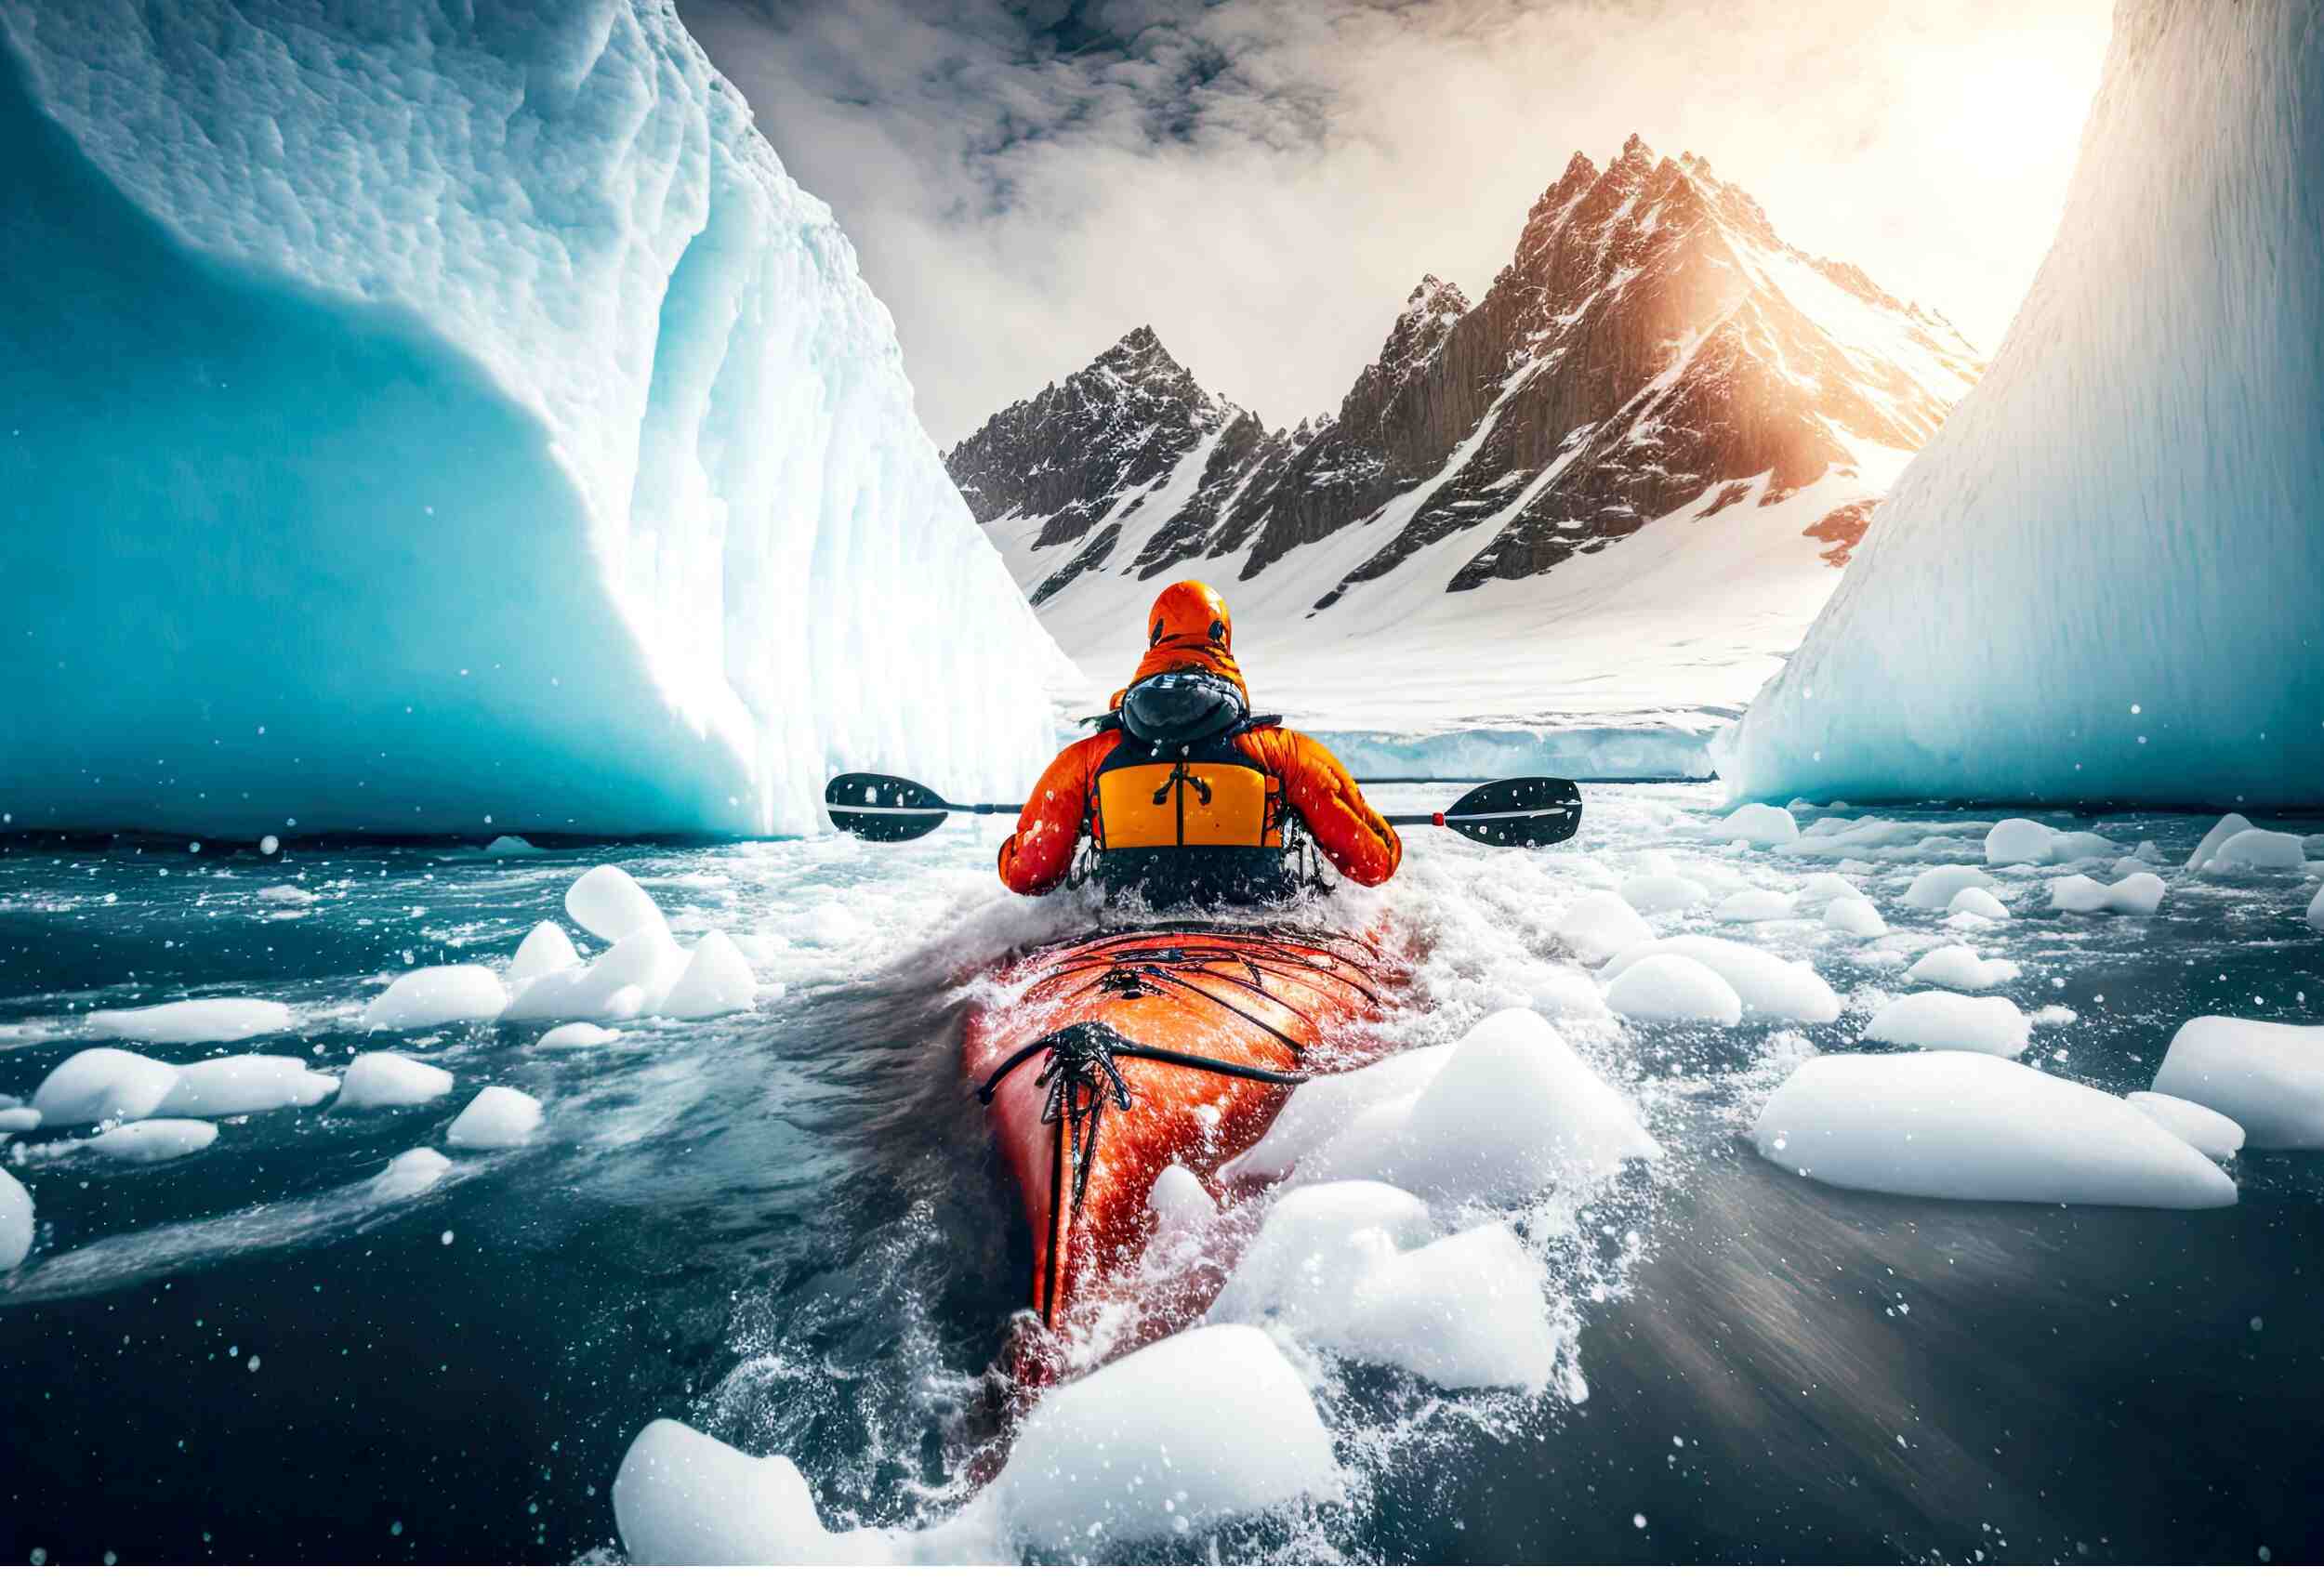 sea kayaking in winter between glaciers